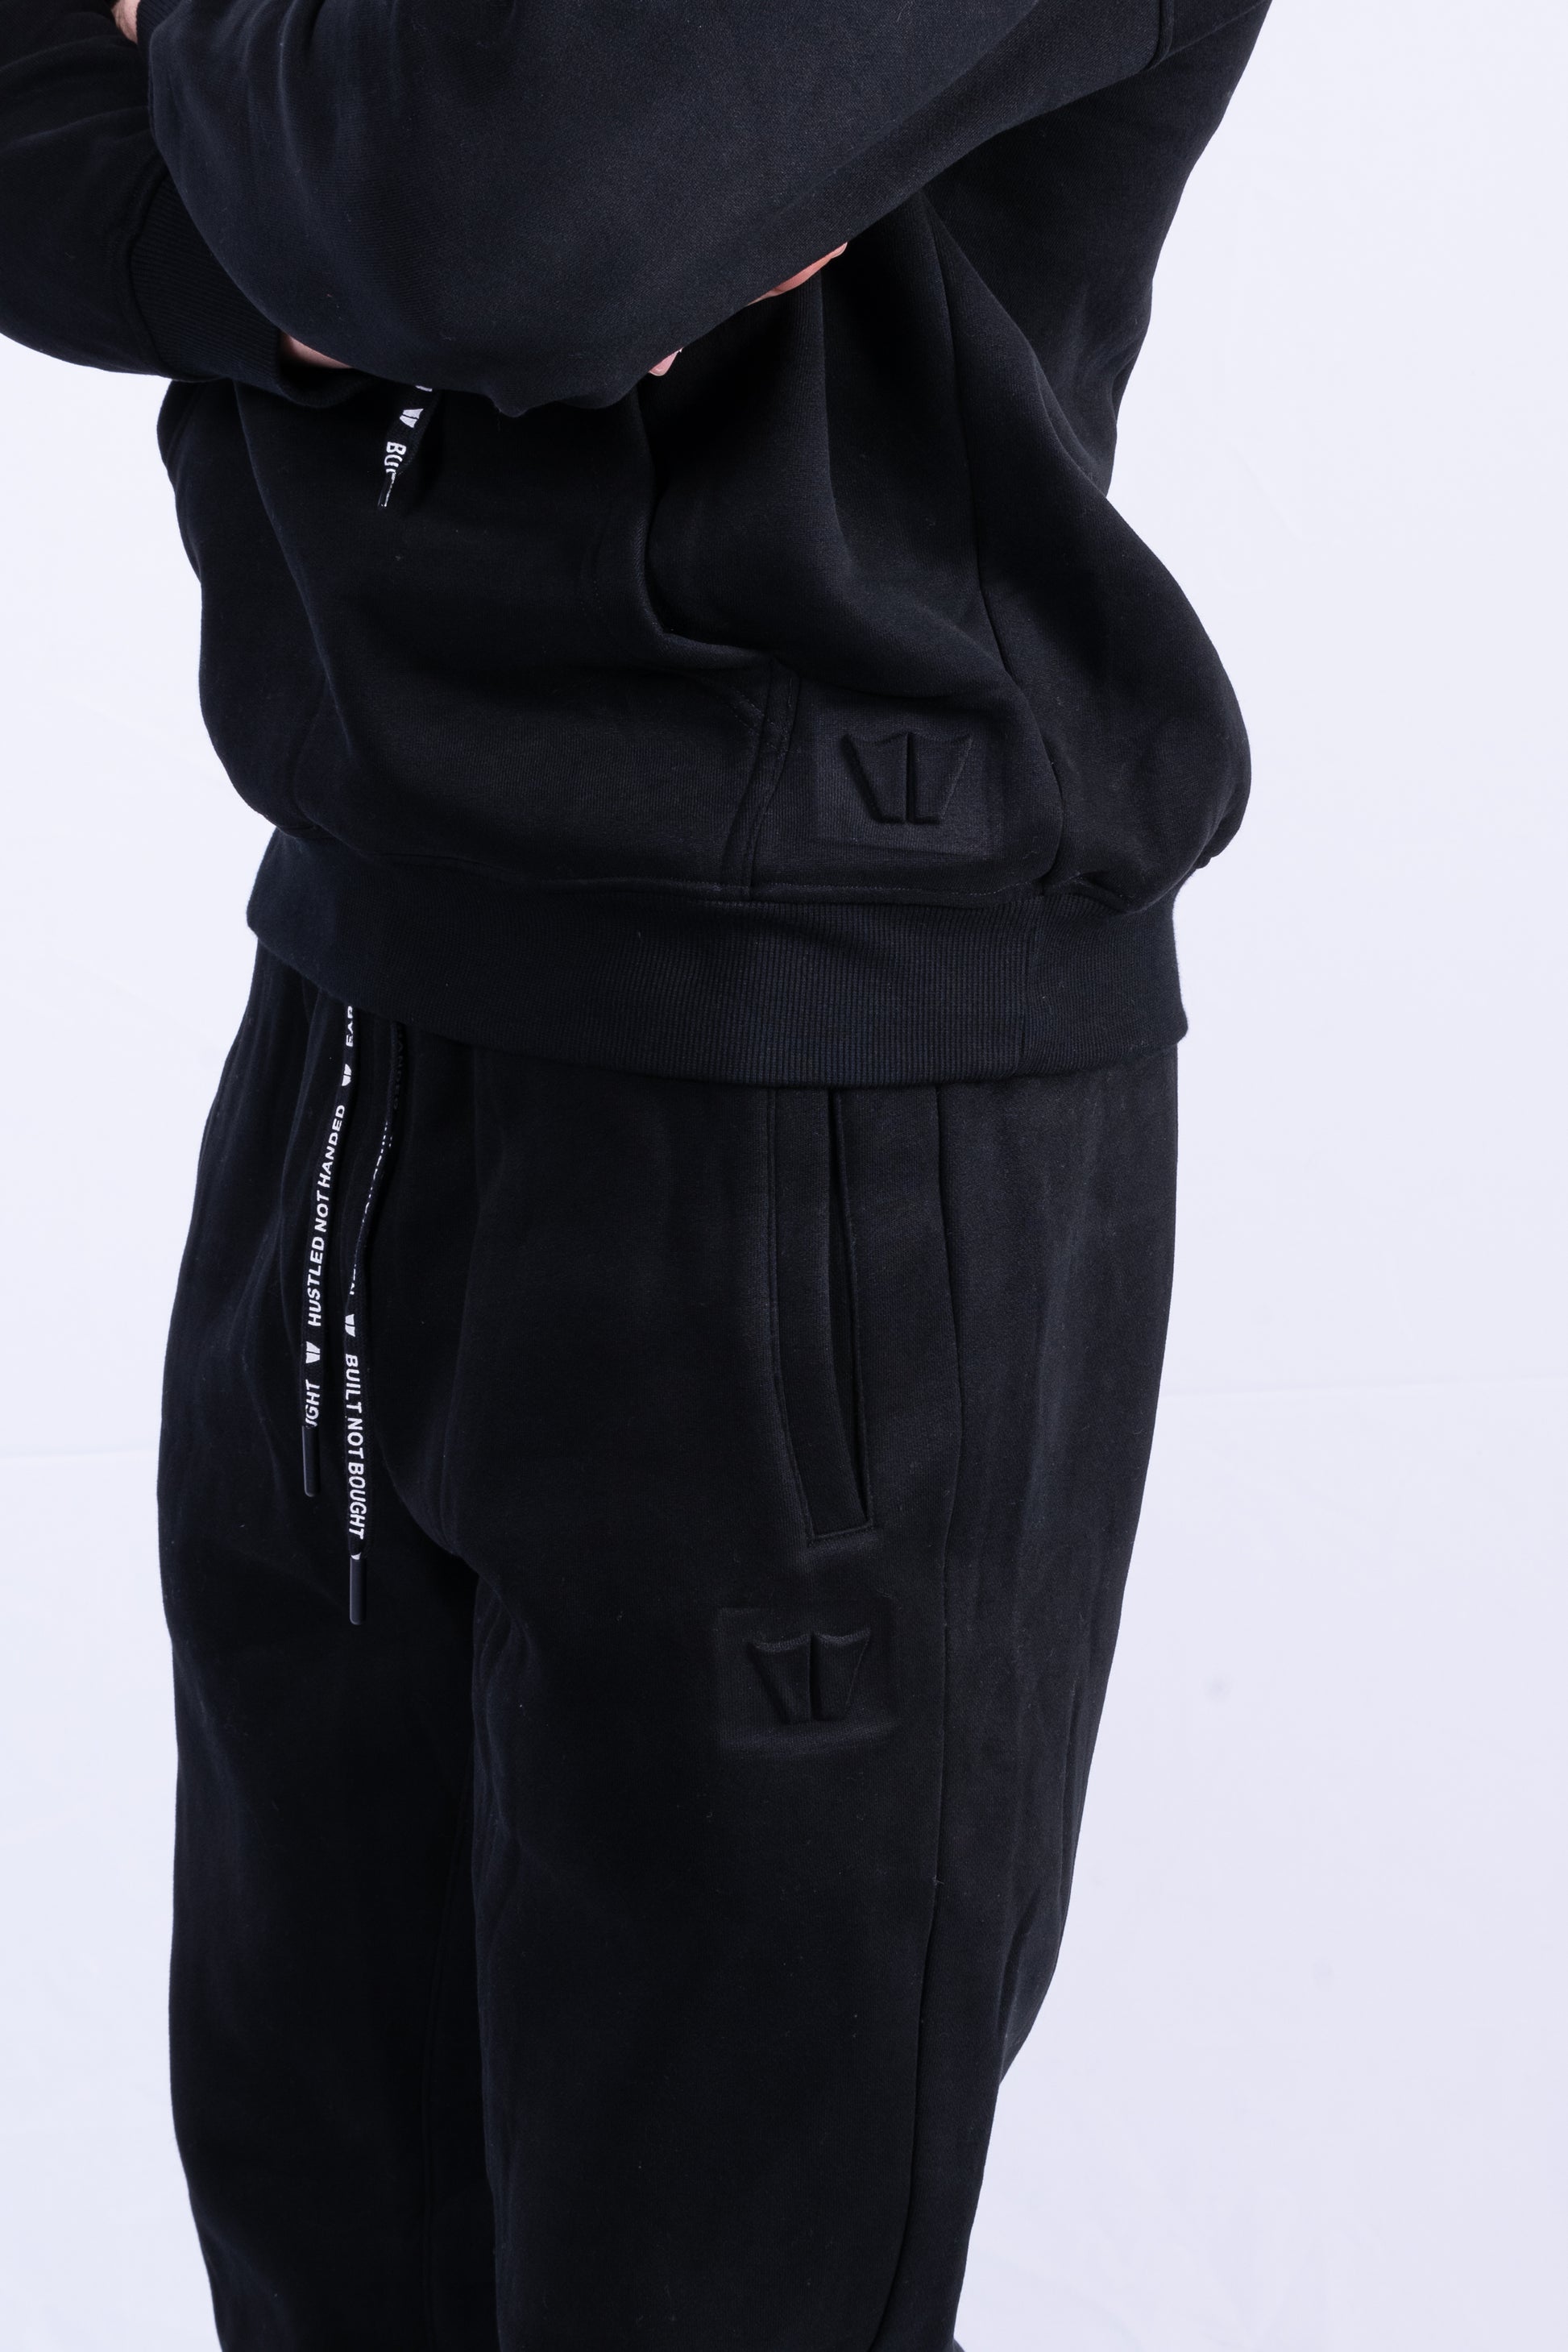 Buy Unisex Comfort Sweatpants in Black